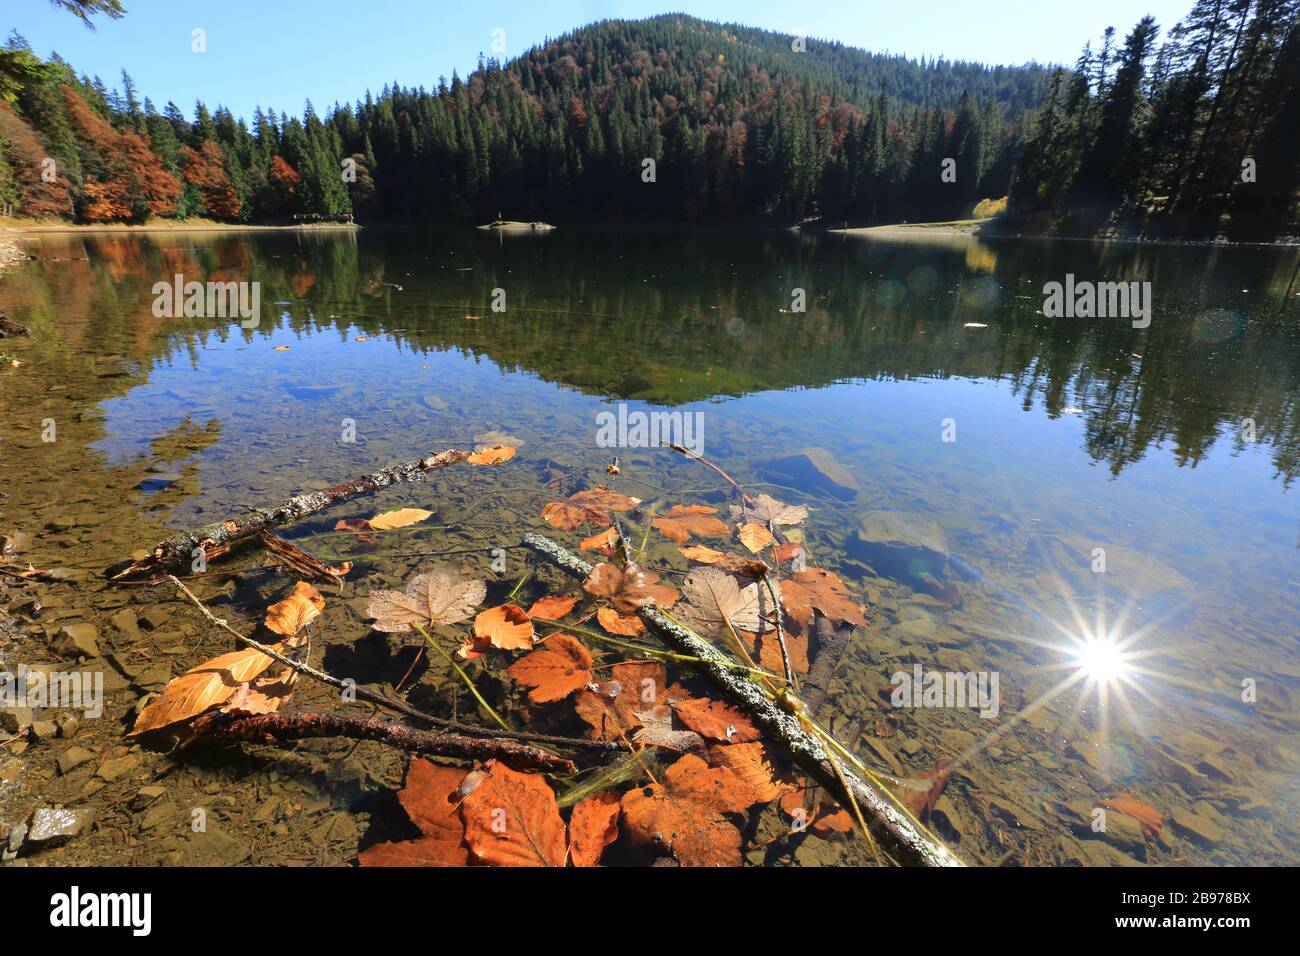 Autumn leafage in mountain lake Stock Photo